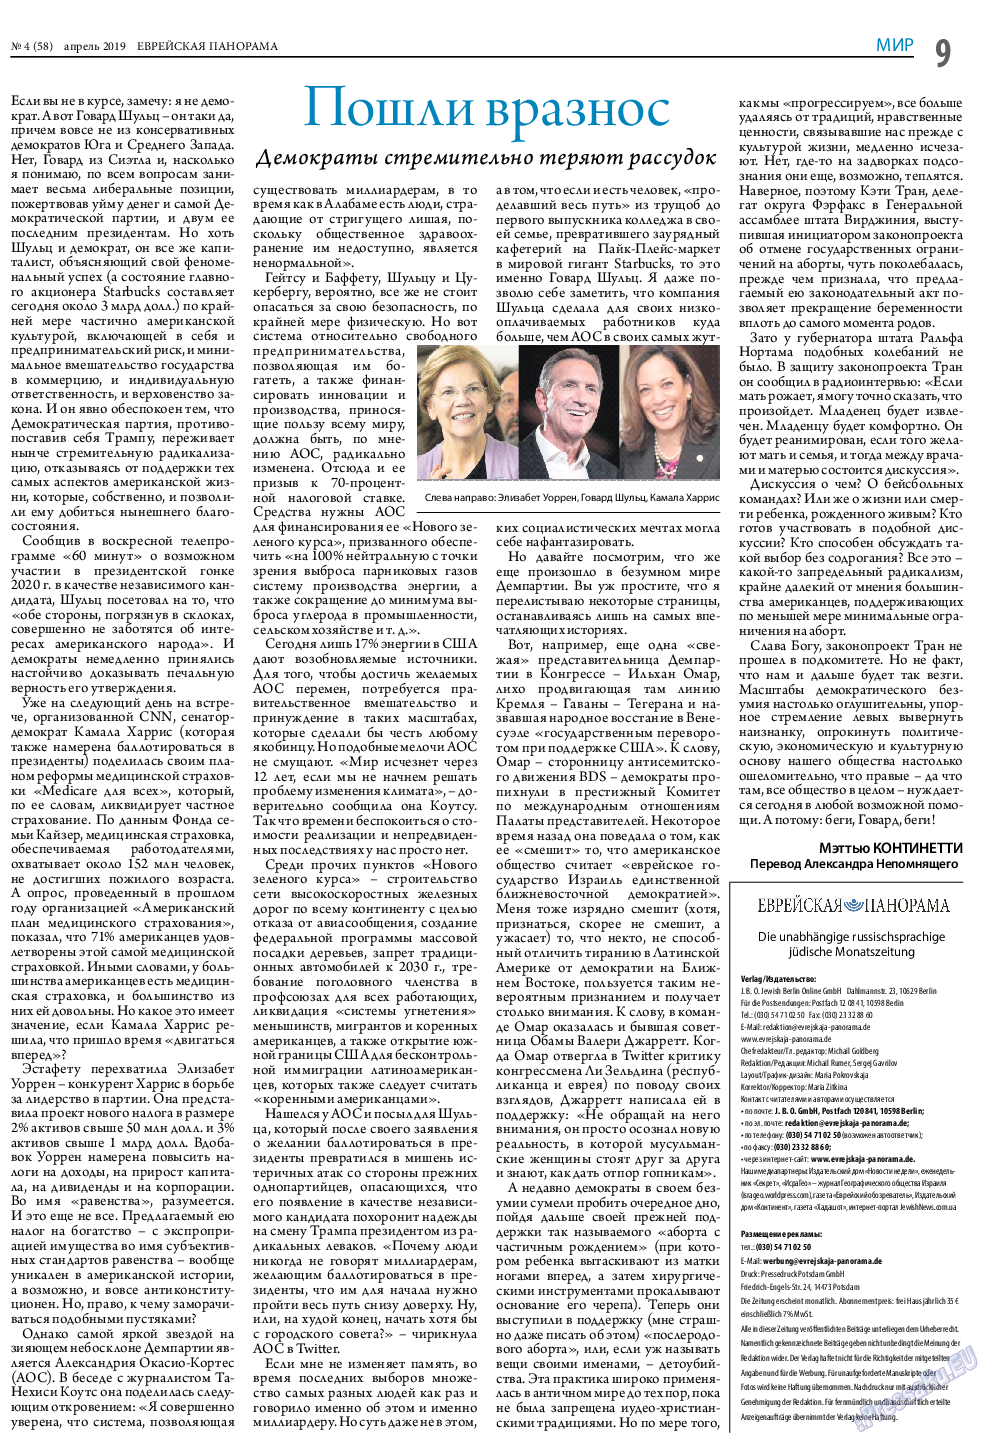 Еврейская панорама (газета). 2019 год, номер 4, стр. 9